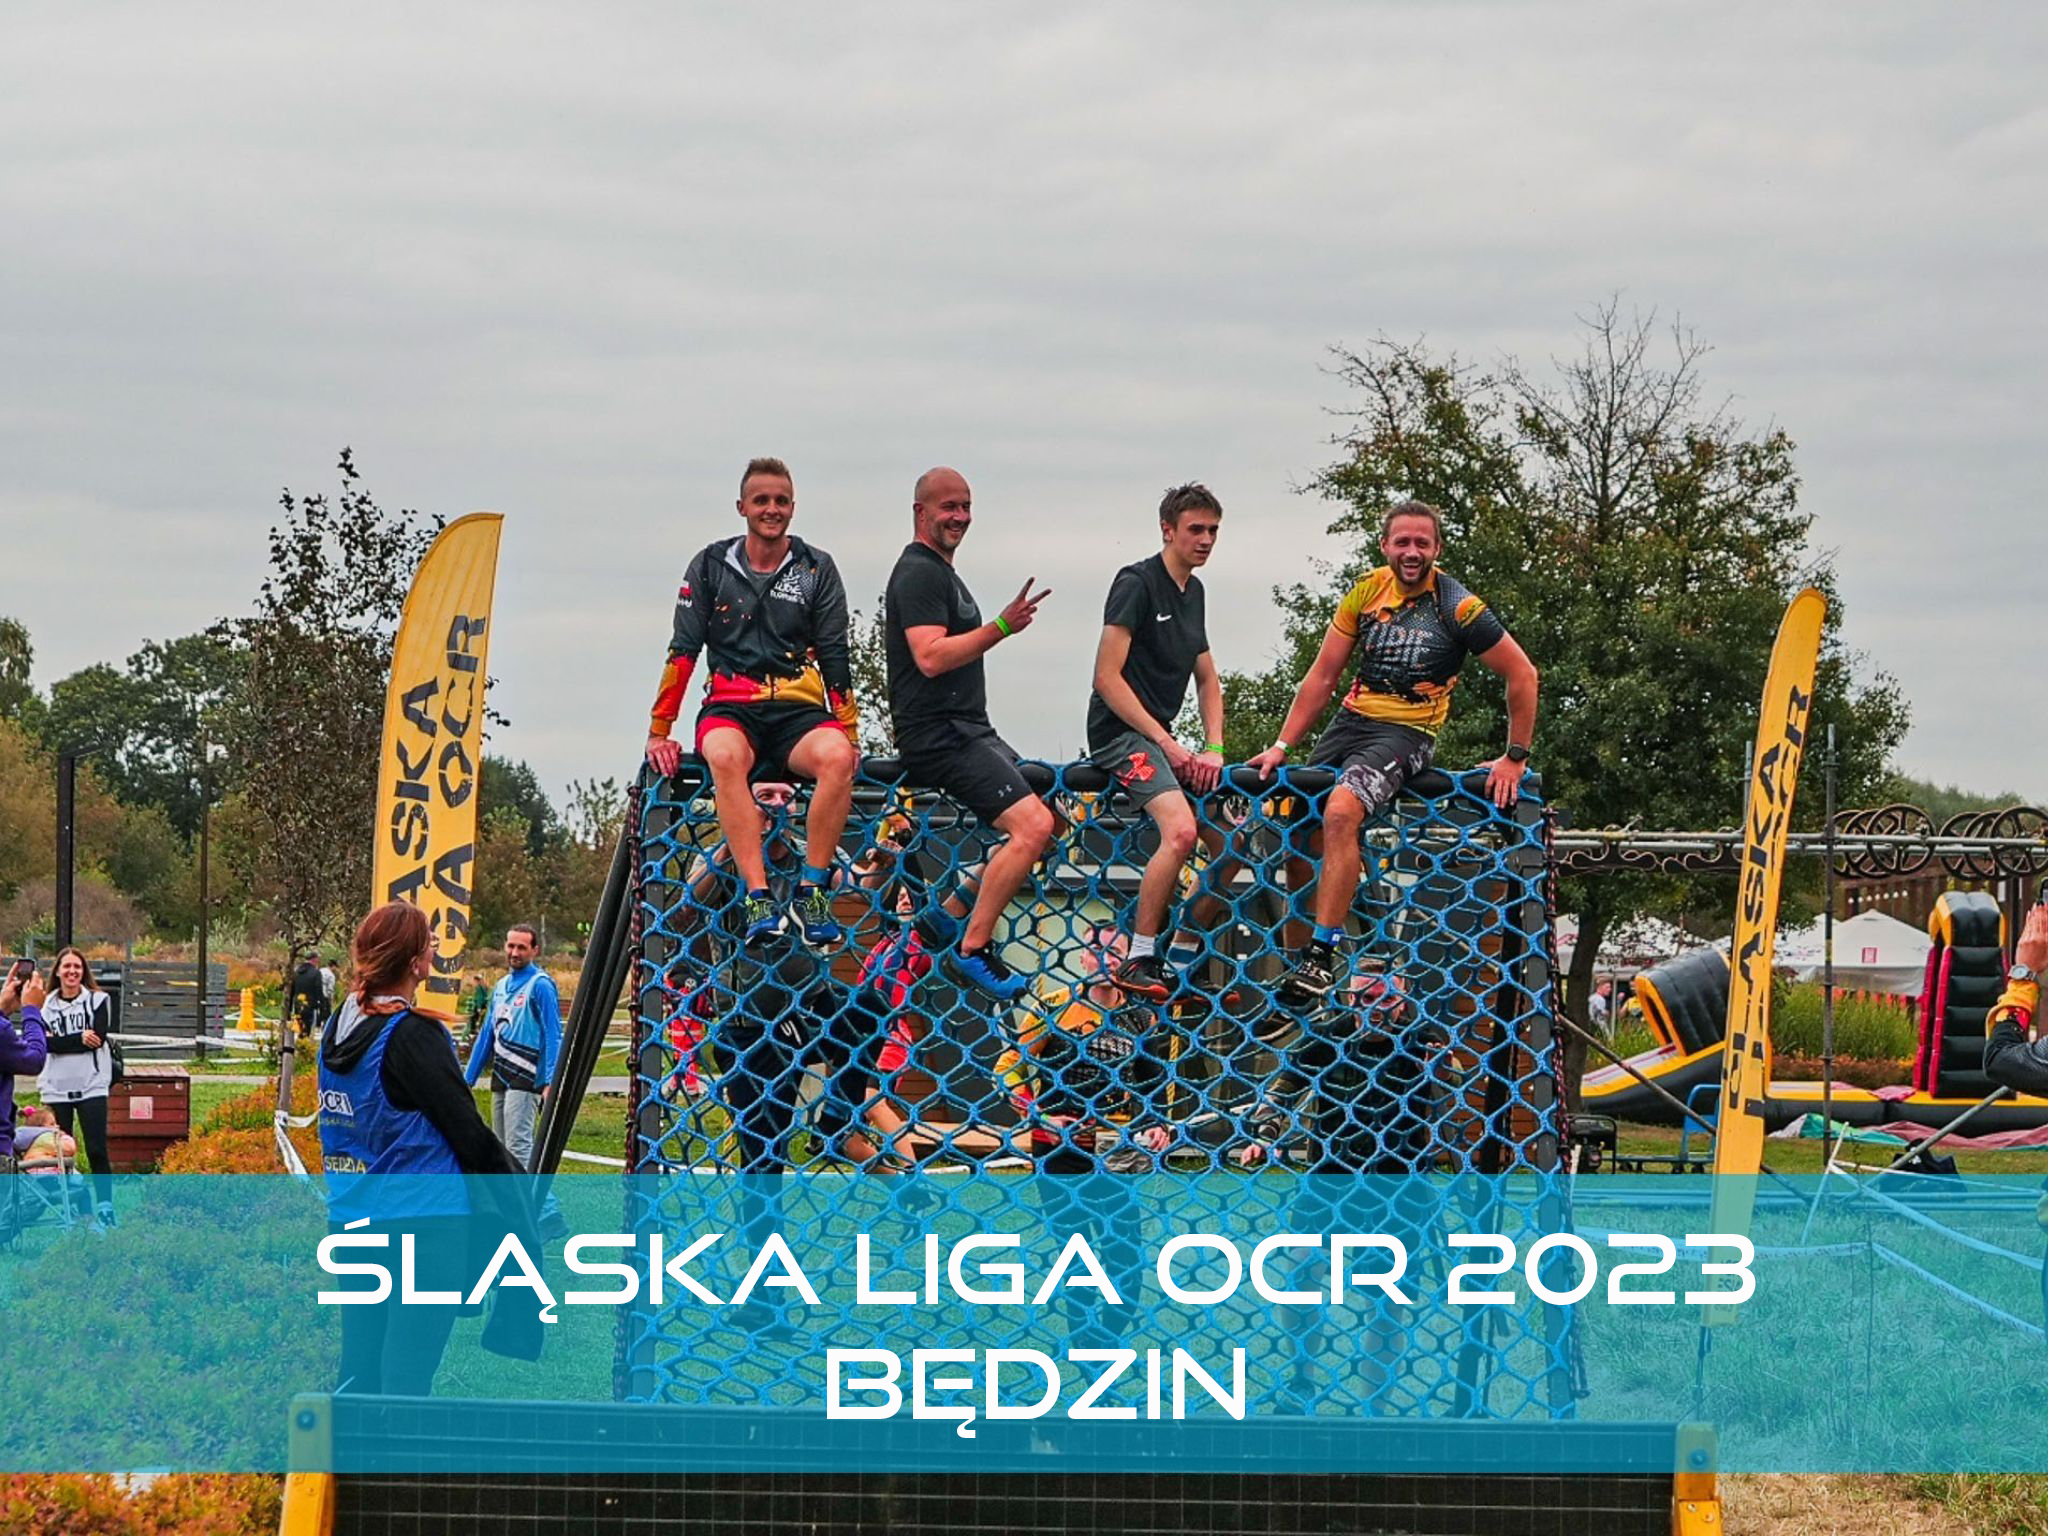 Śląska Liga OCR 2023 Będzin